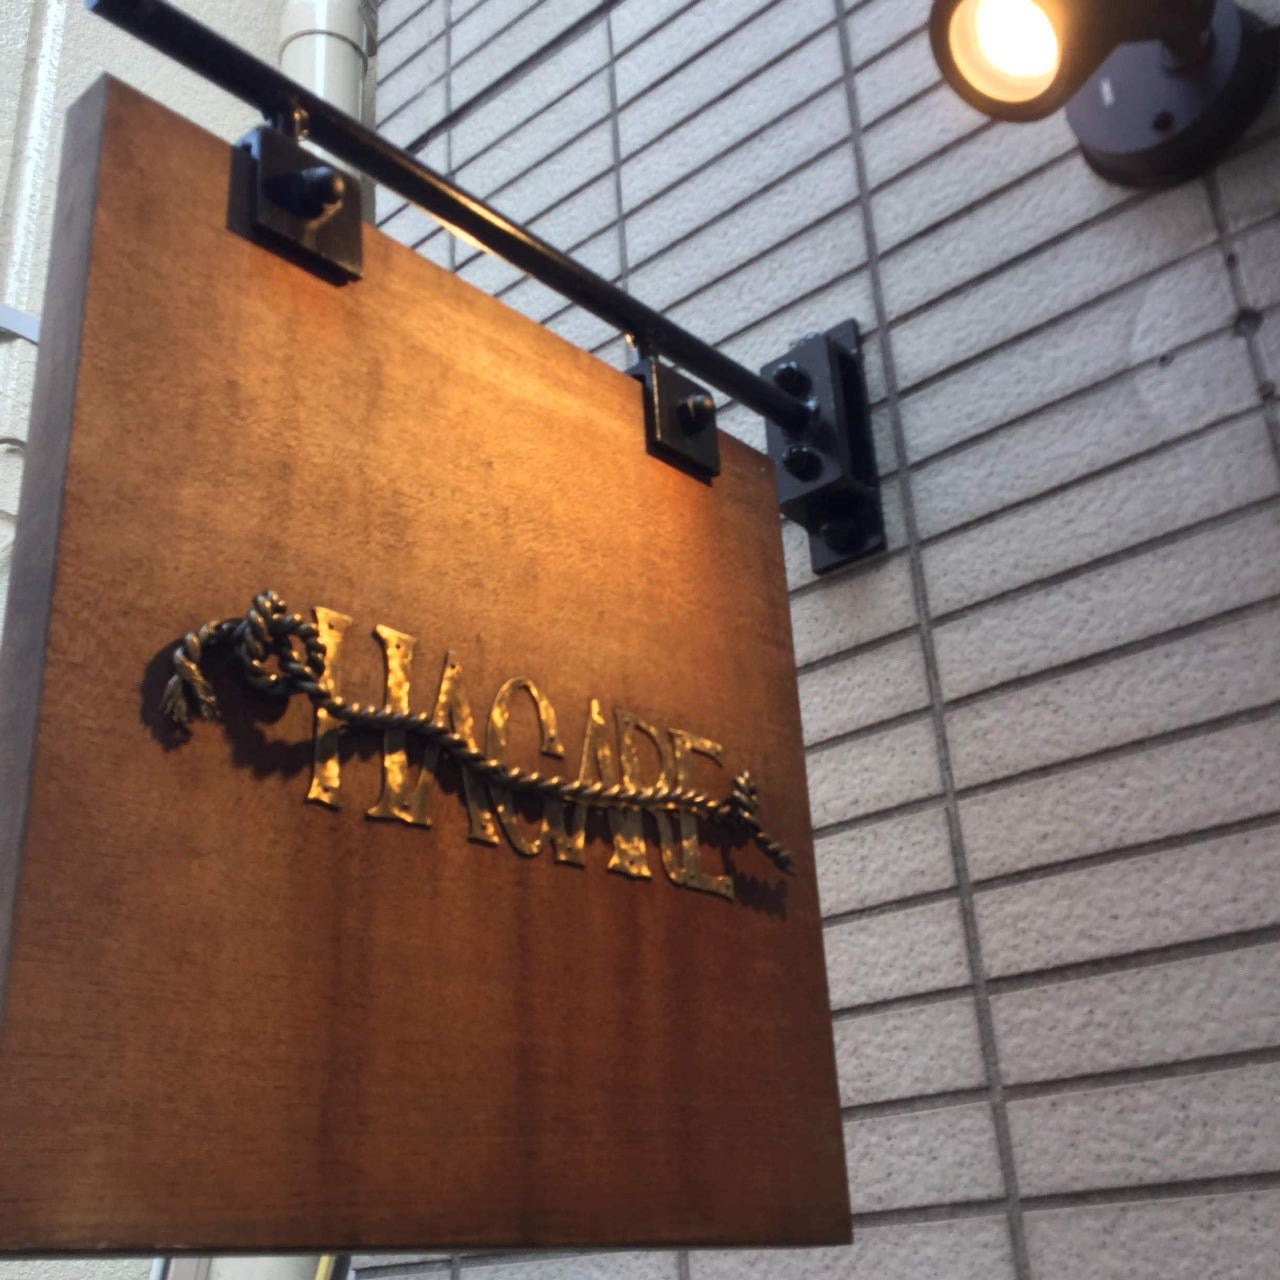 22年 最新グルメ 下北沢にある昼宴会ができるお店 レストラン カフェ 居酒屋のネット予約 東京版